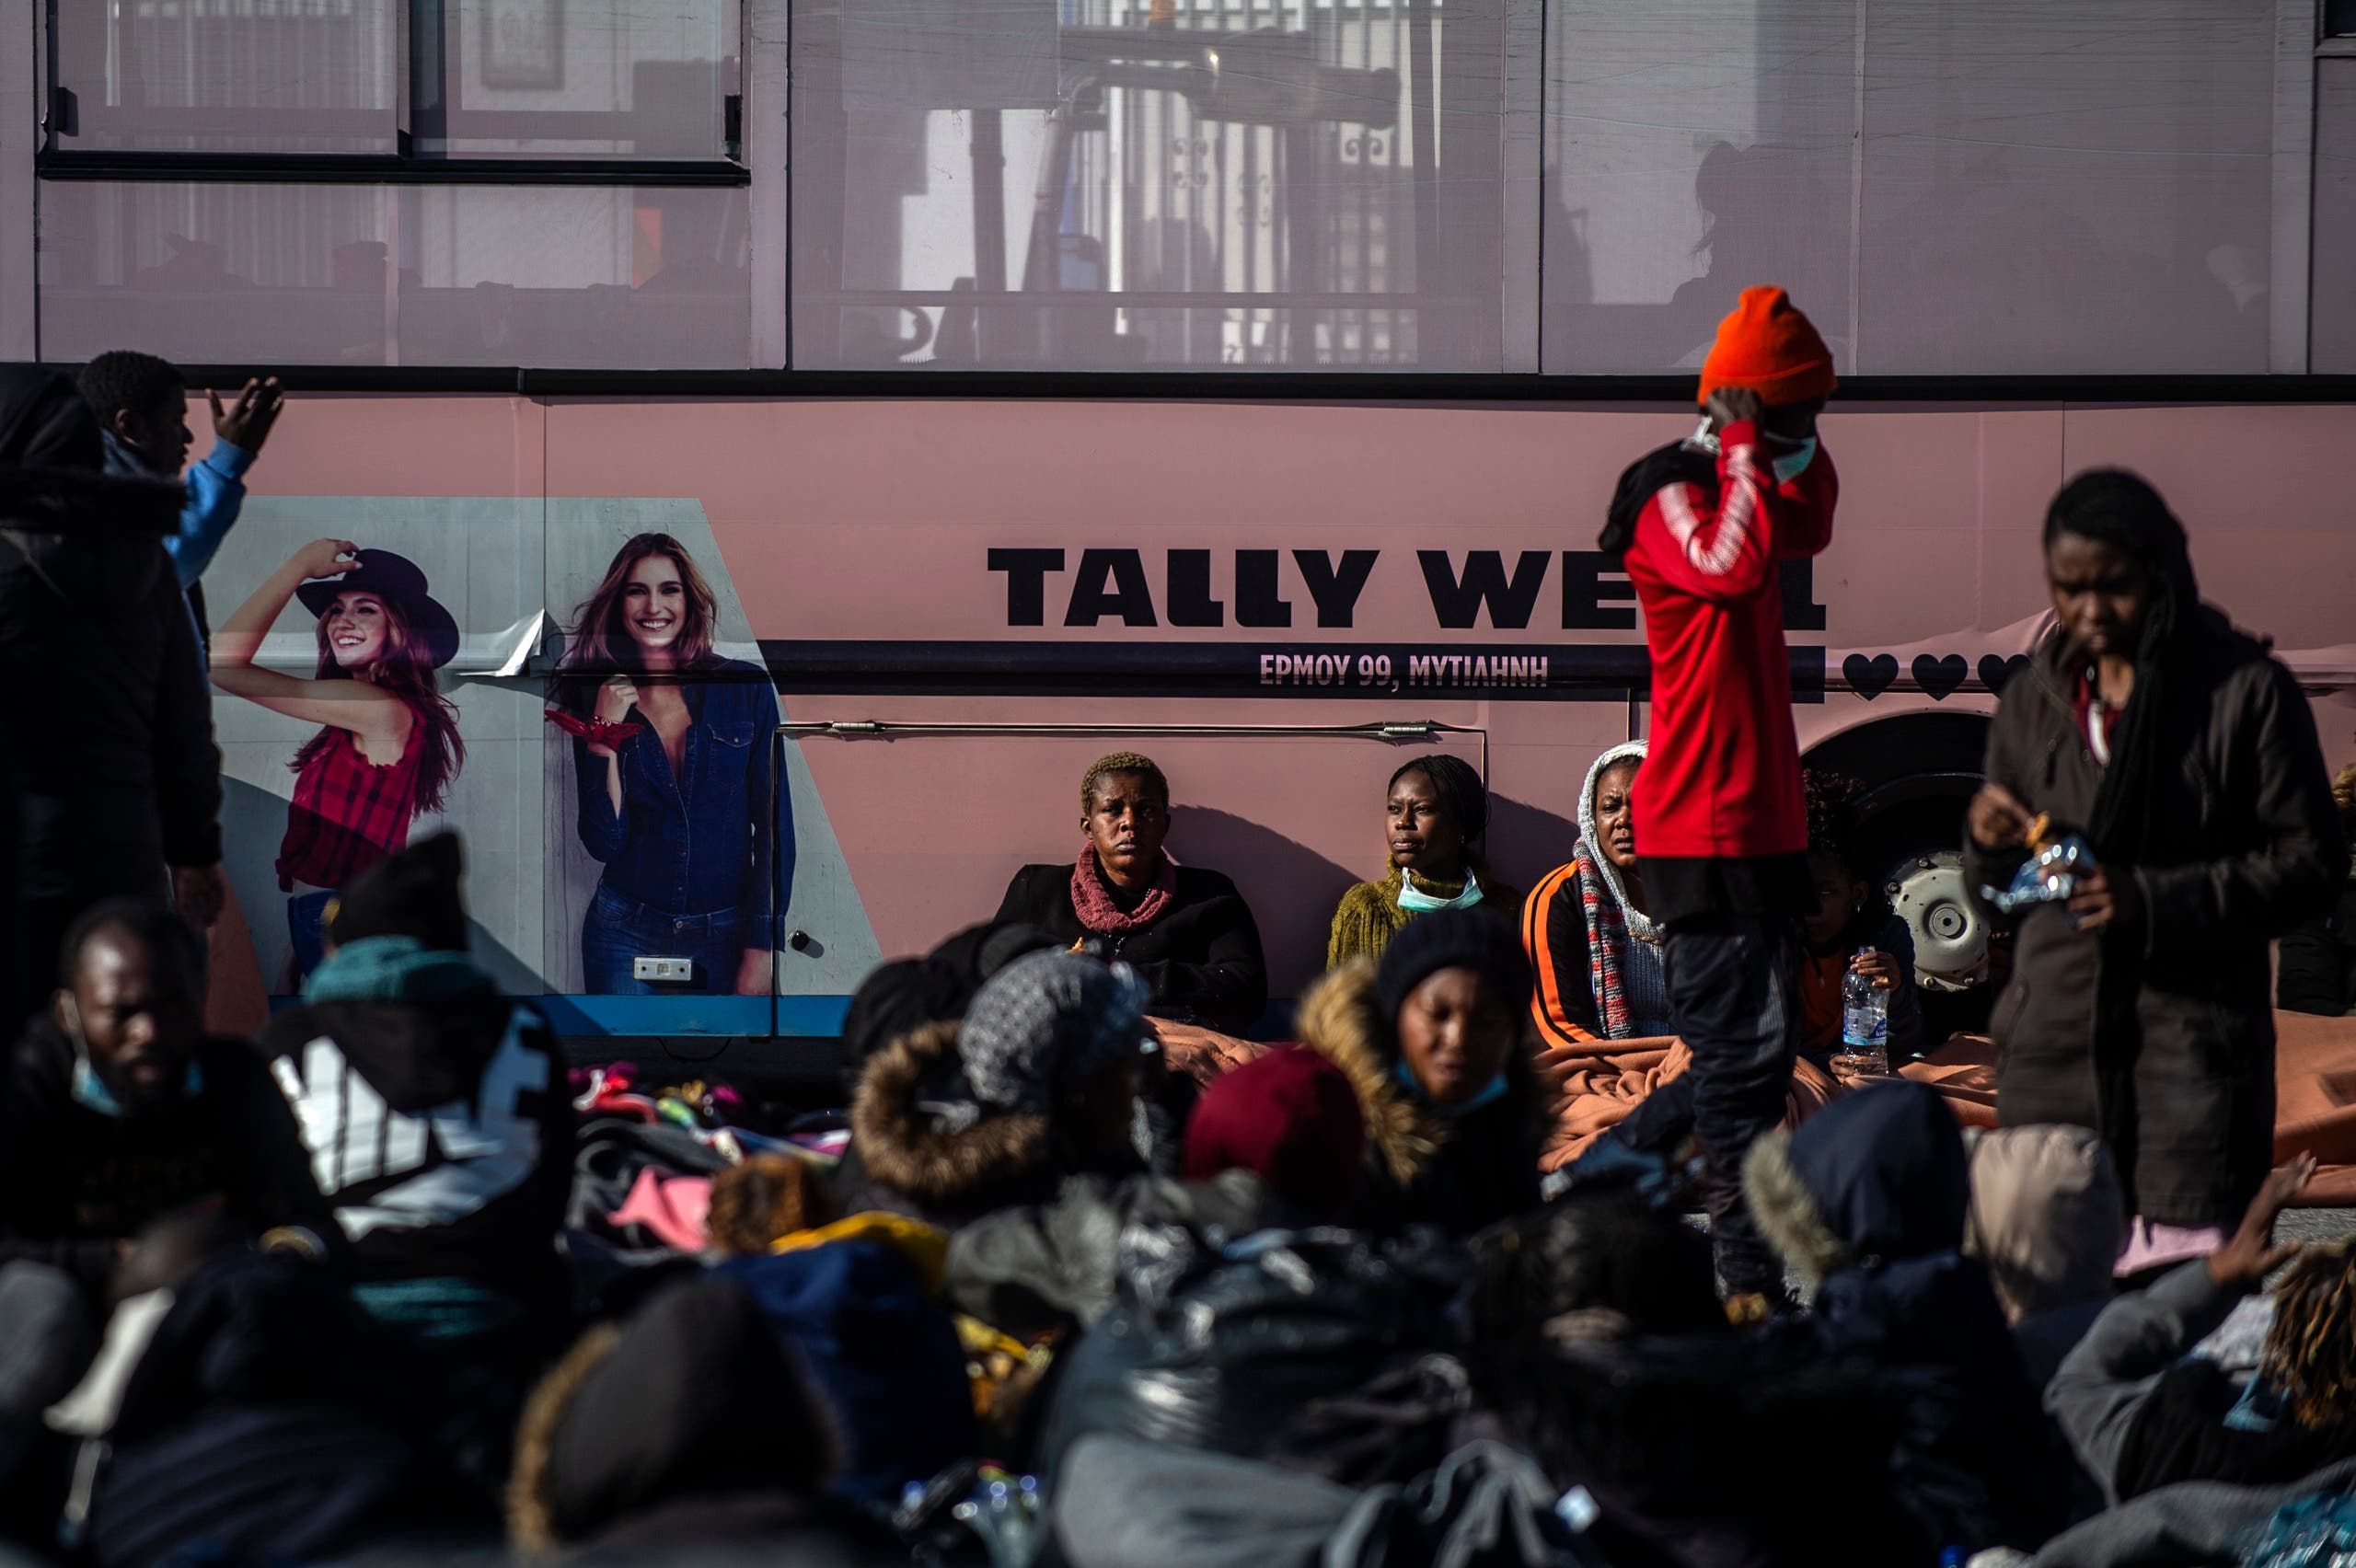 مهاجرون وصلوا إلى جزيرة ليسبوس اليونانية قادمين من تركيا بعد فتح الحدود أمامهم